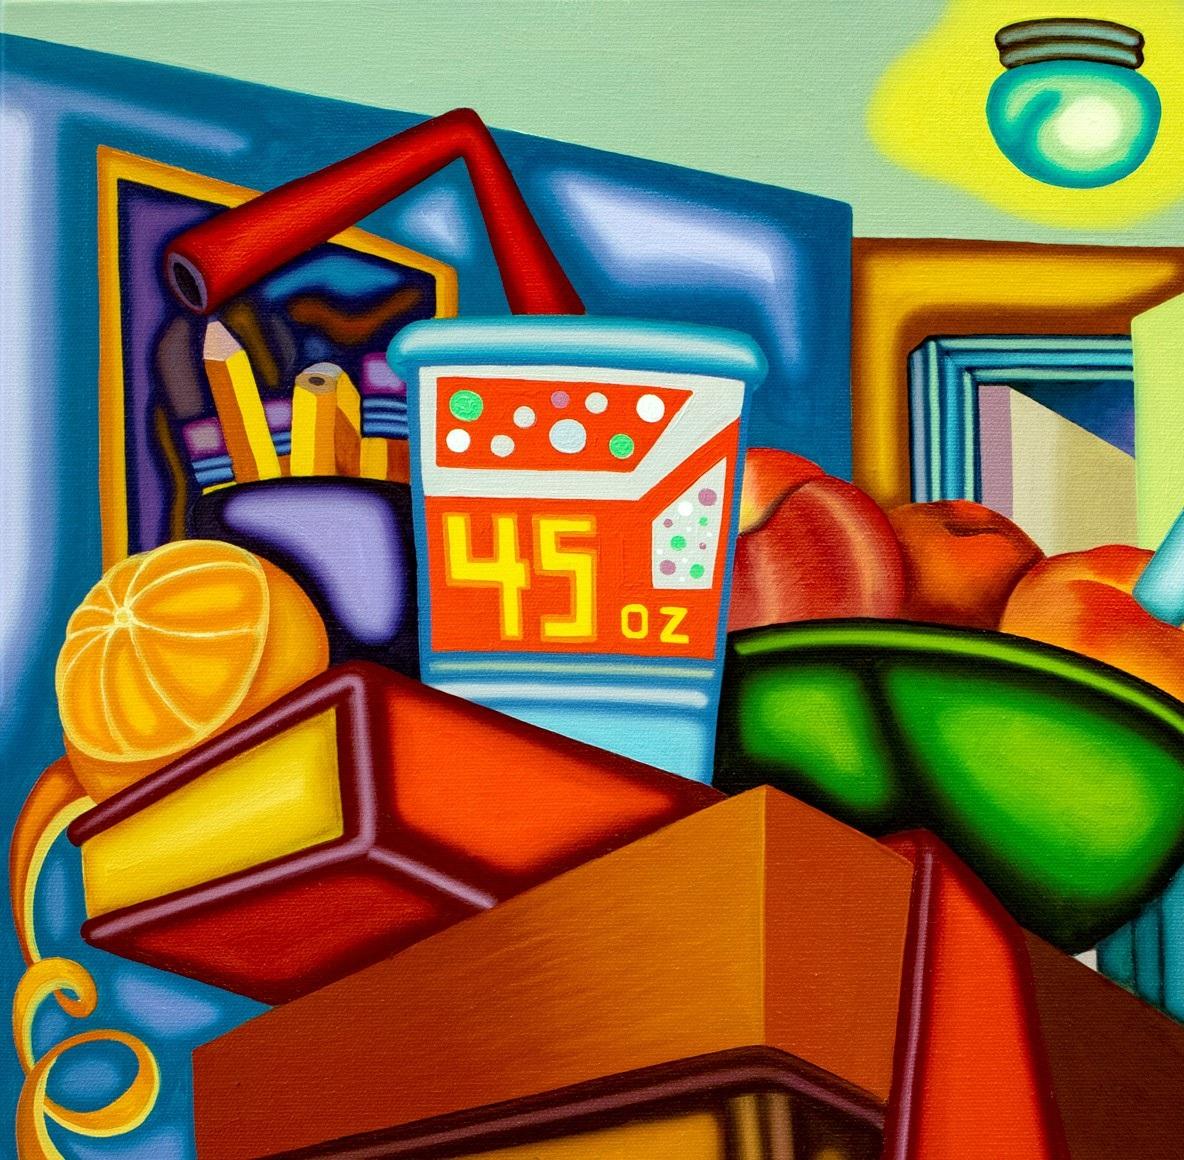 AS AB ABOVE SO BELOW - Kubistisches, surreales Stillleben mit kräftigen Farben – Painting von Jason Stout